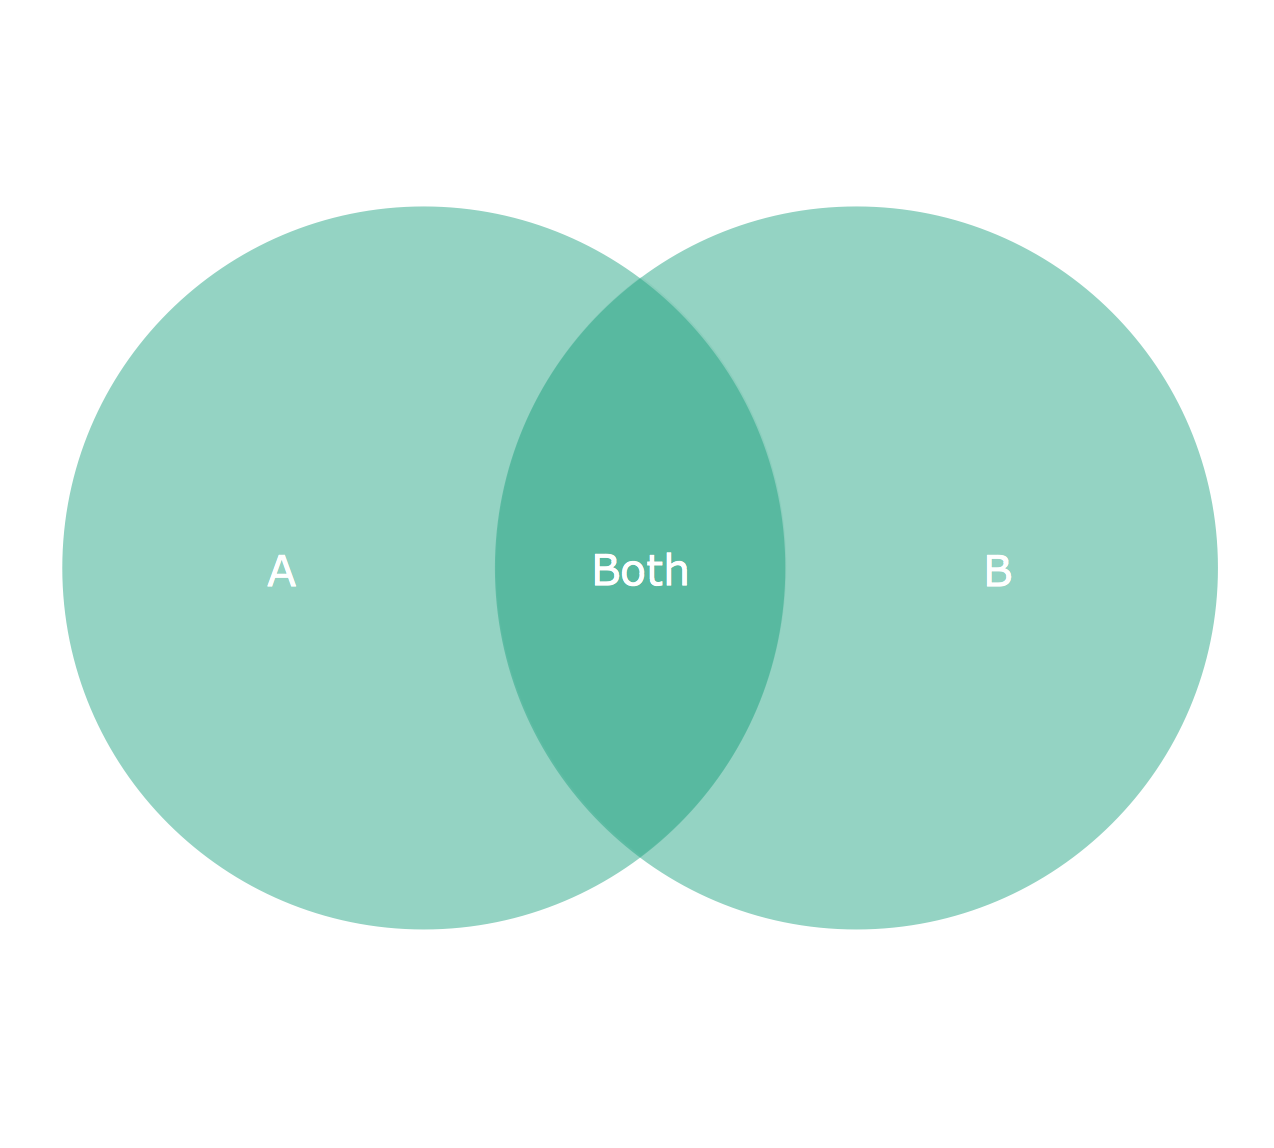 triple-venn-diagram-graphic-organizers-math-websites-math